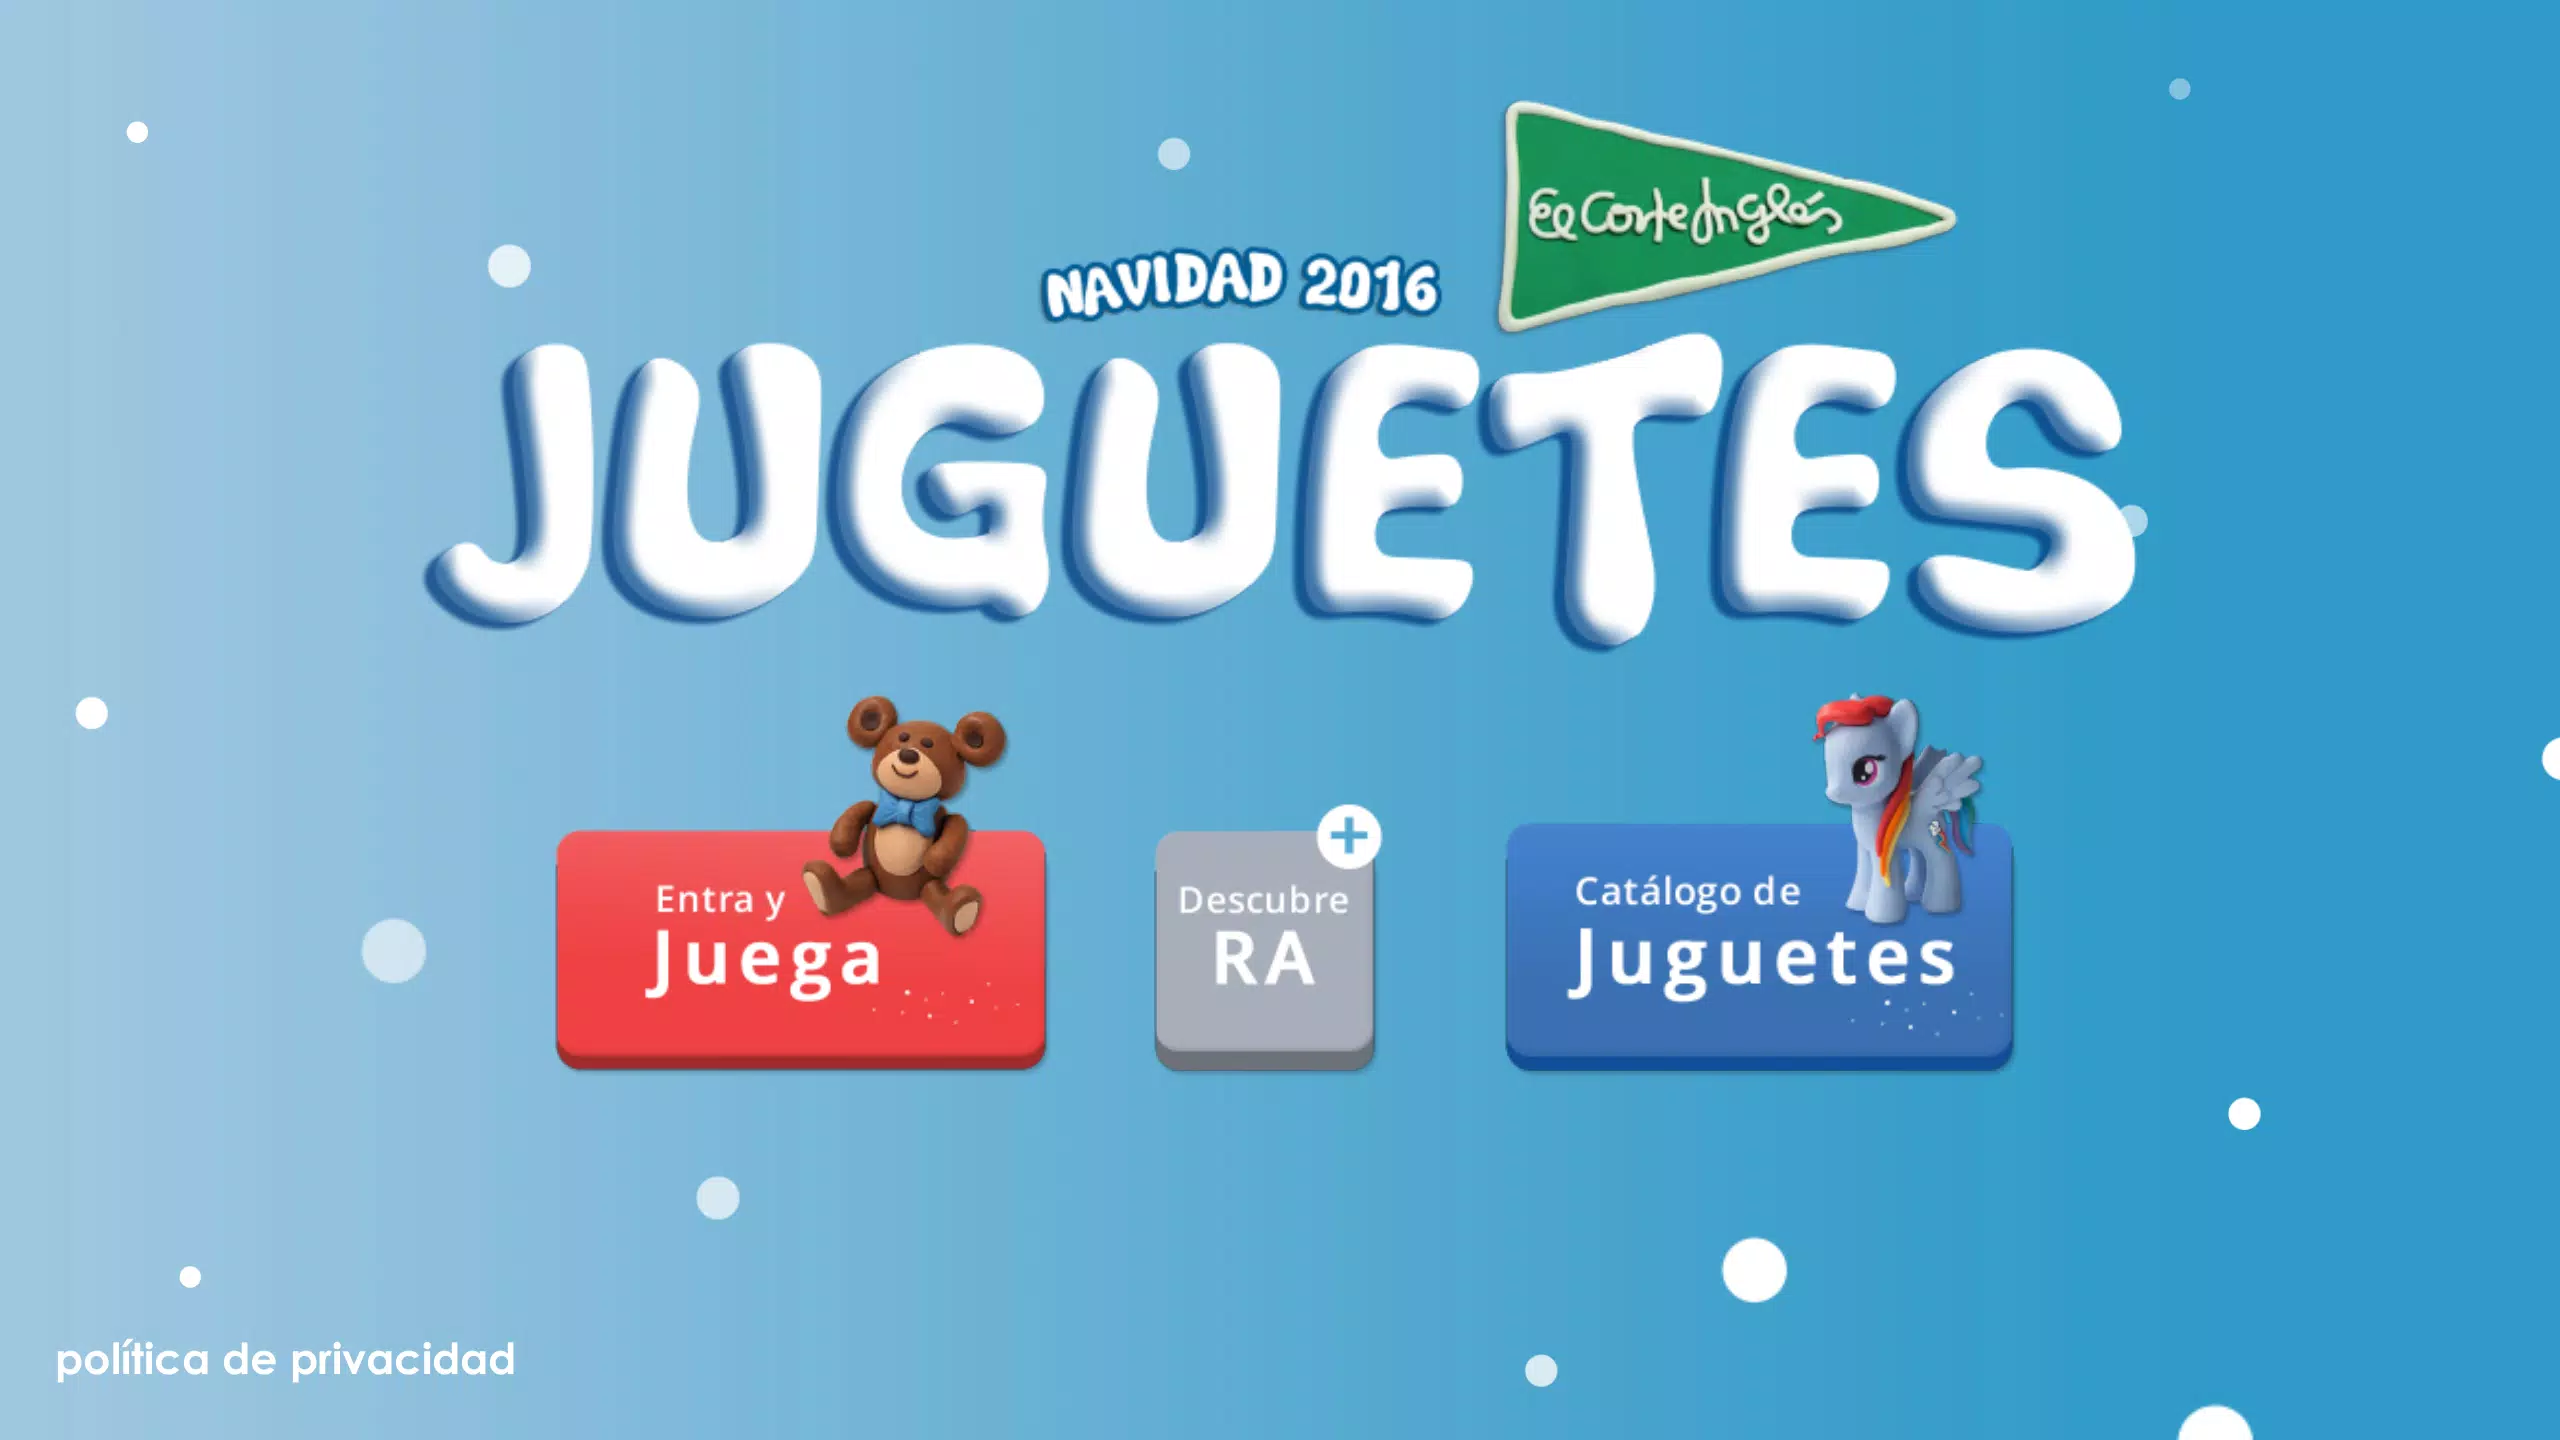 Juguetes El Corte Inglés APK for Android Download